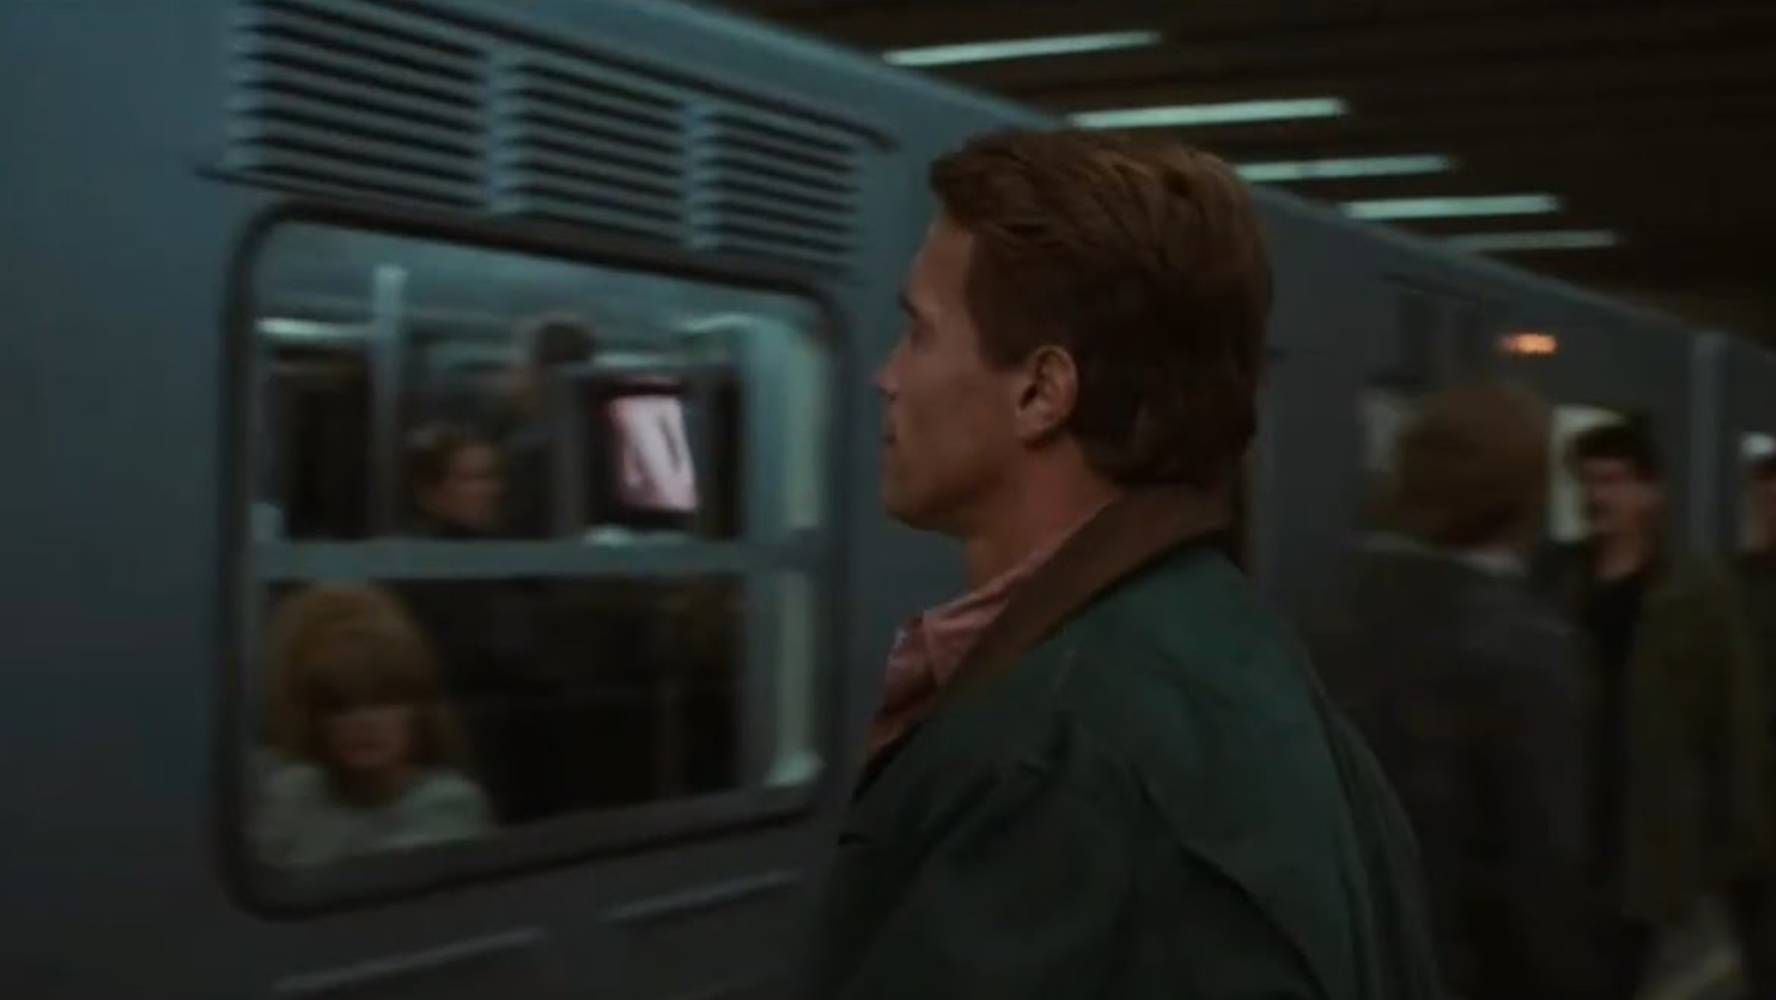 La cinta de 1990 se grabó en Metro Chabacano con modificaciones que lo hicieron ver futurista. (Foto: IMDb).